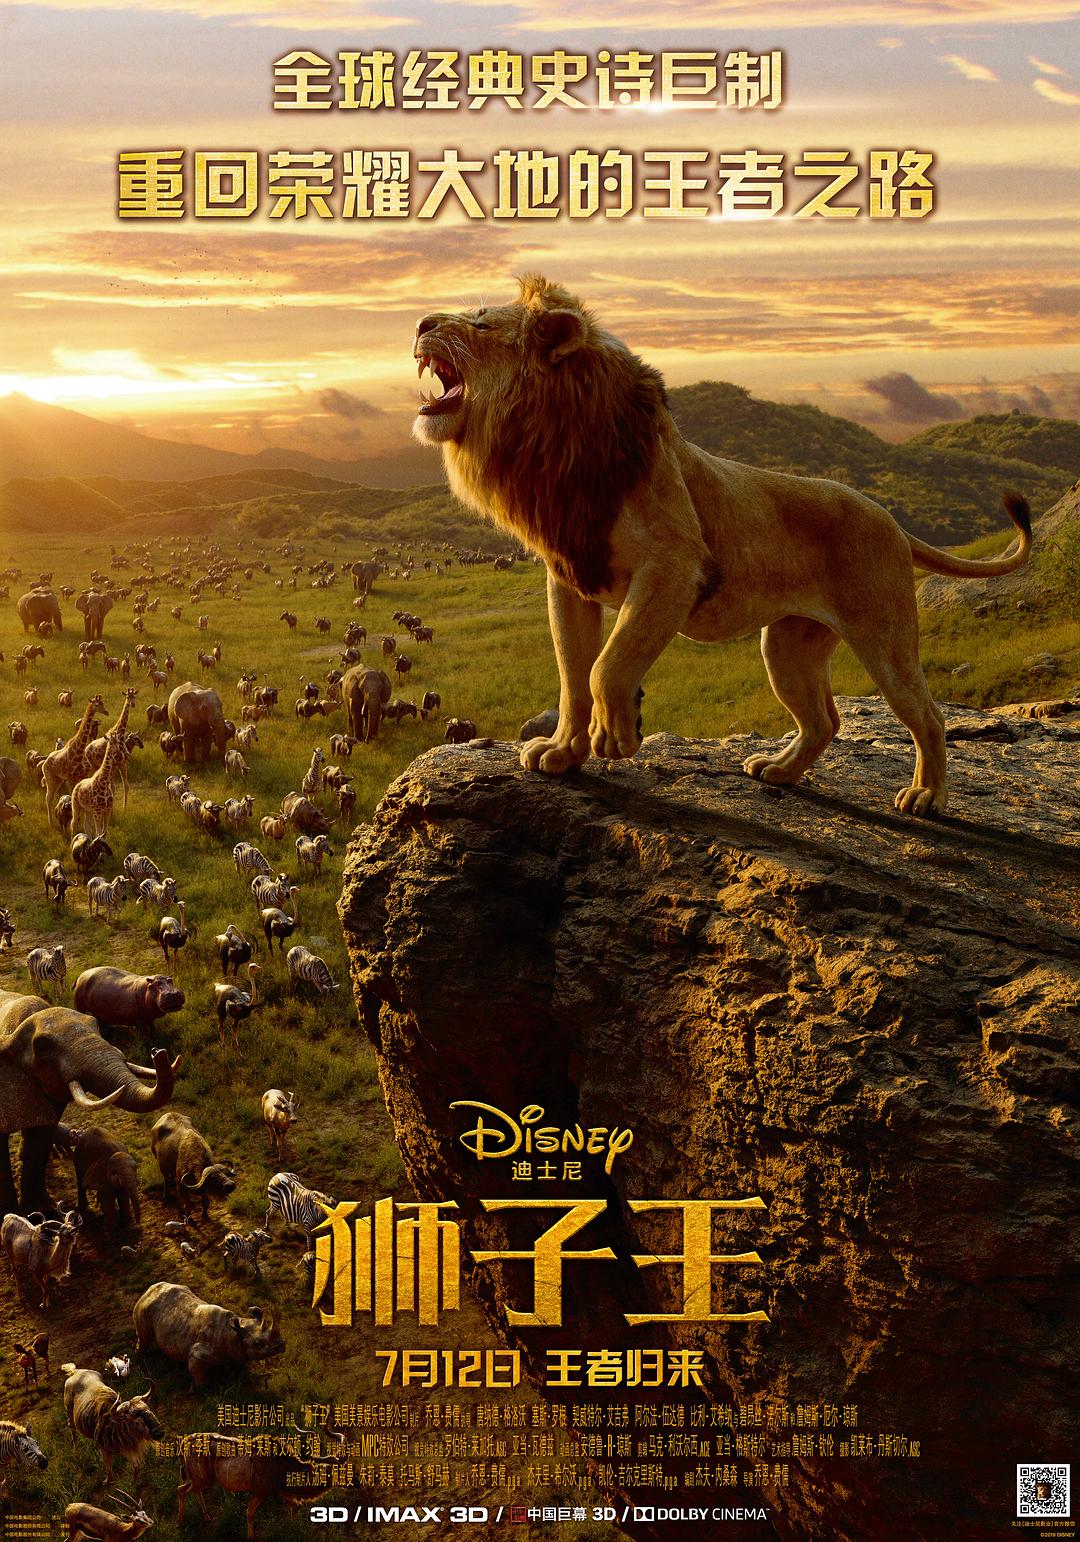 狮子王/狮子王真人版 The.Lion.King.2019.1080p.BluRay.AVC.DTS-HD.MA.7.1-FGT 42.27GB-1.png